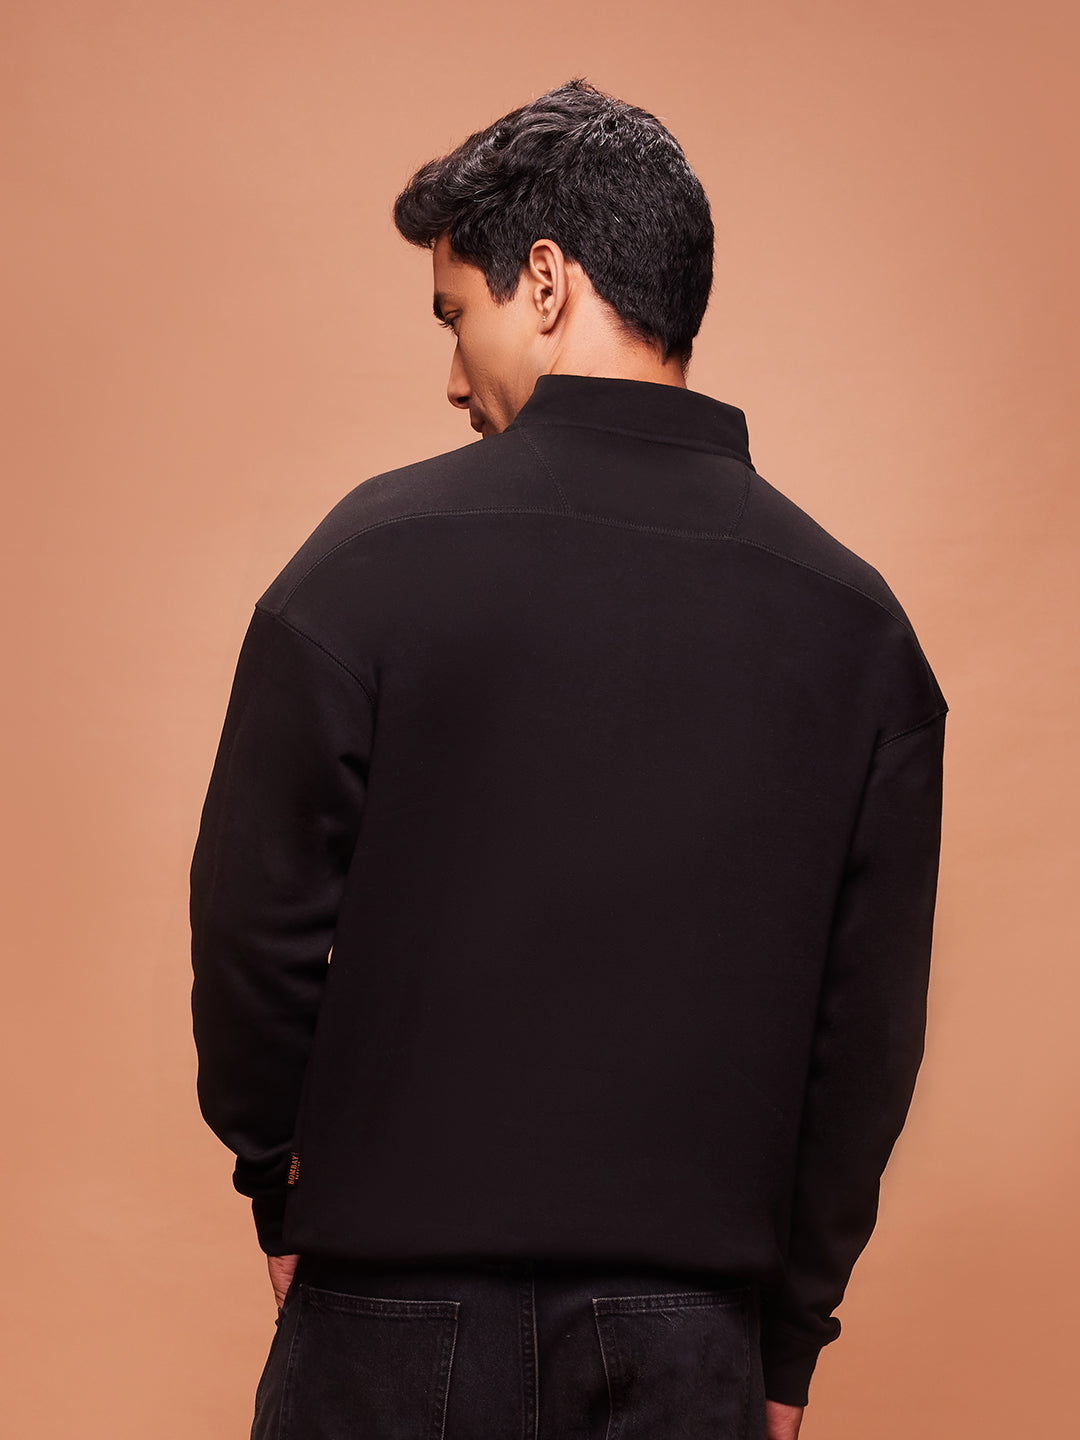 Bombay High Men's Solid Black Half Zip Knit Sweatshirt